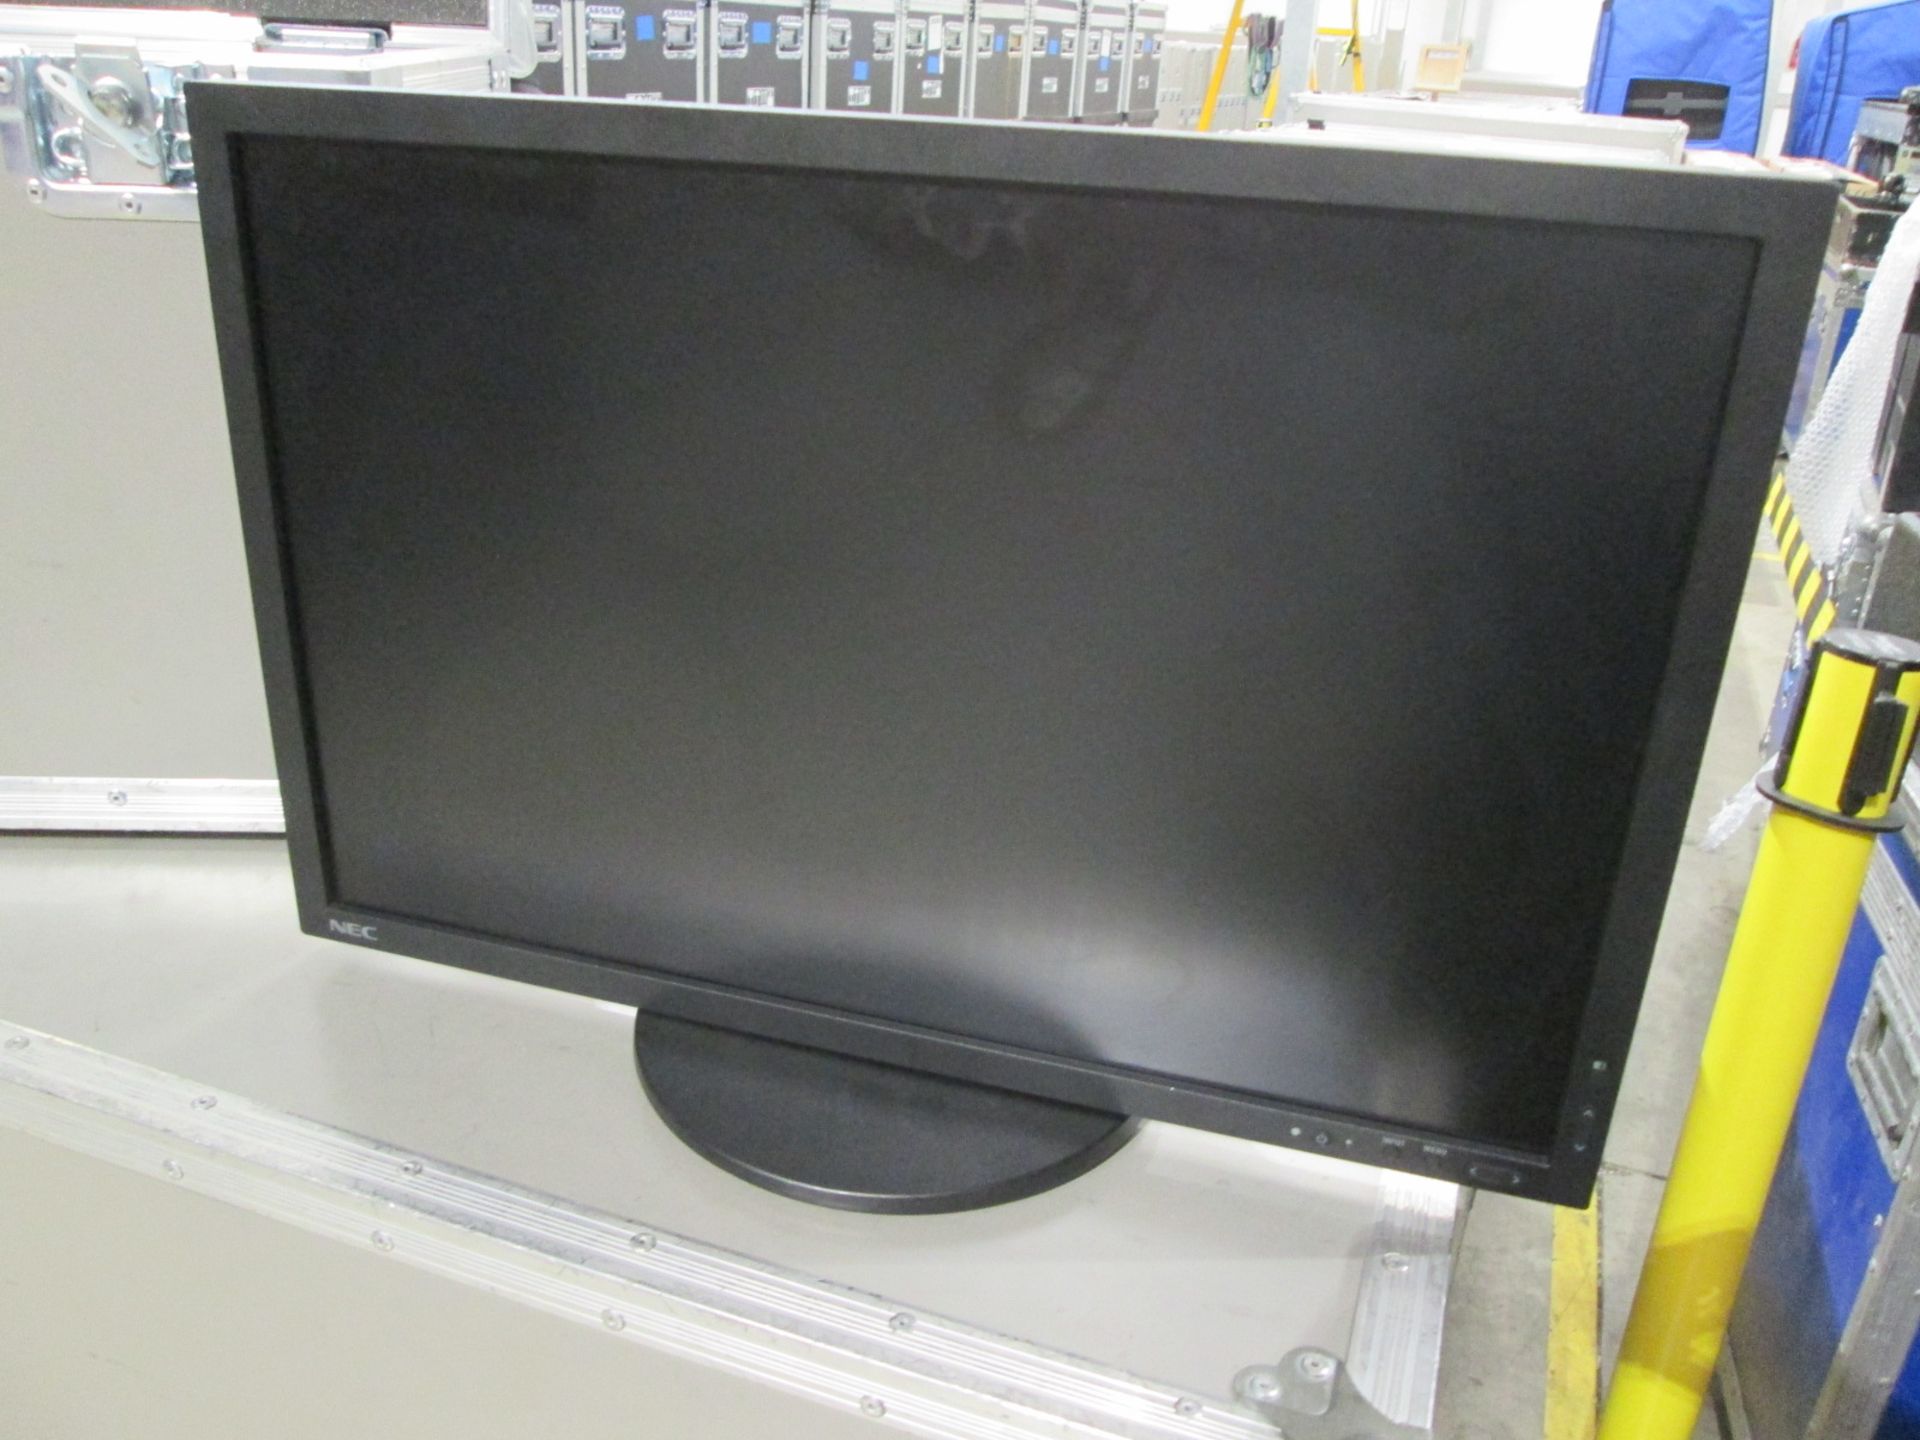 NEC PA243W 24" LCD Monitors (Qty 3) In flight cases